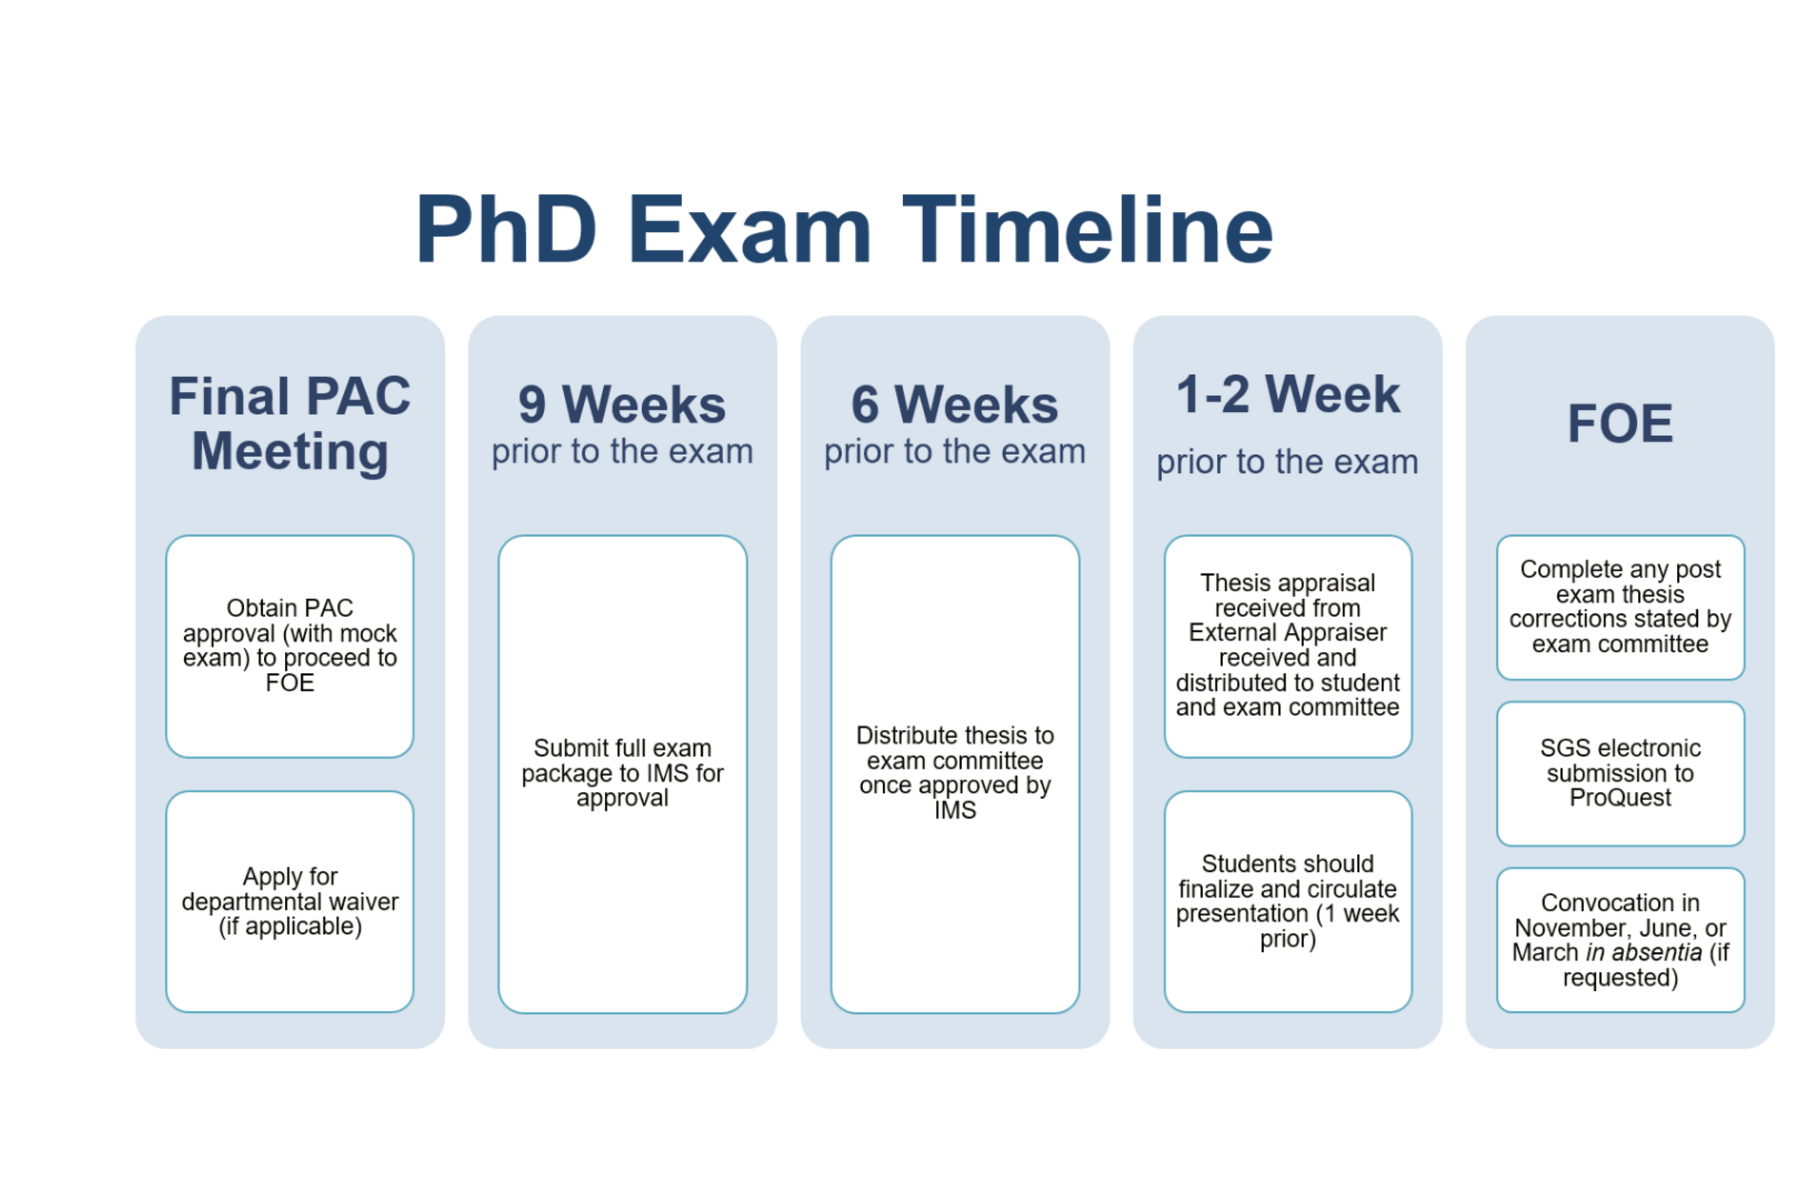 PhD FOE Timeline